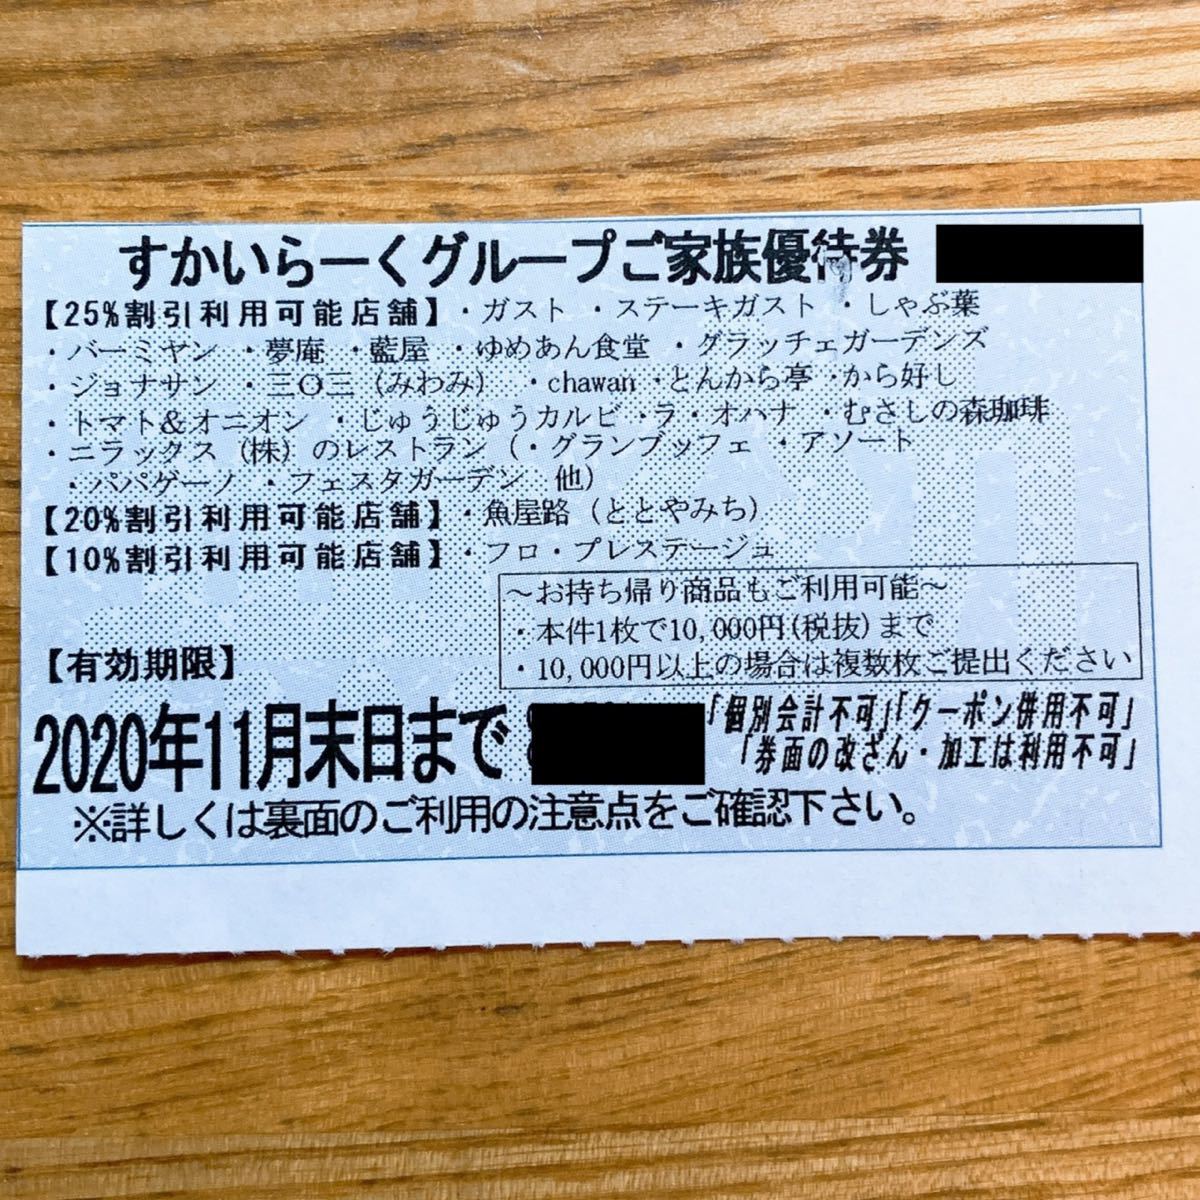 正規逆輸入品】 すかいらーく 25% 優待券1枚 opri.sg